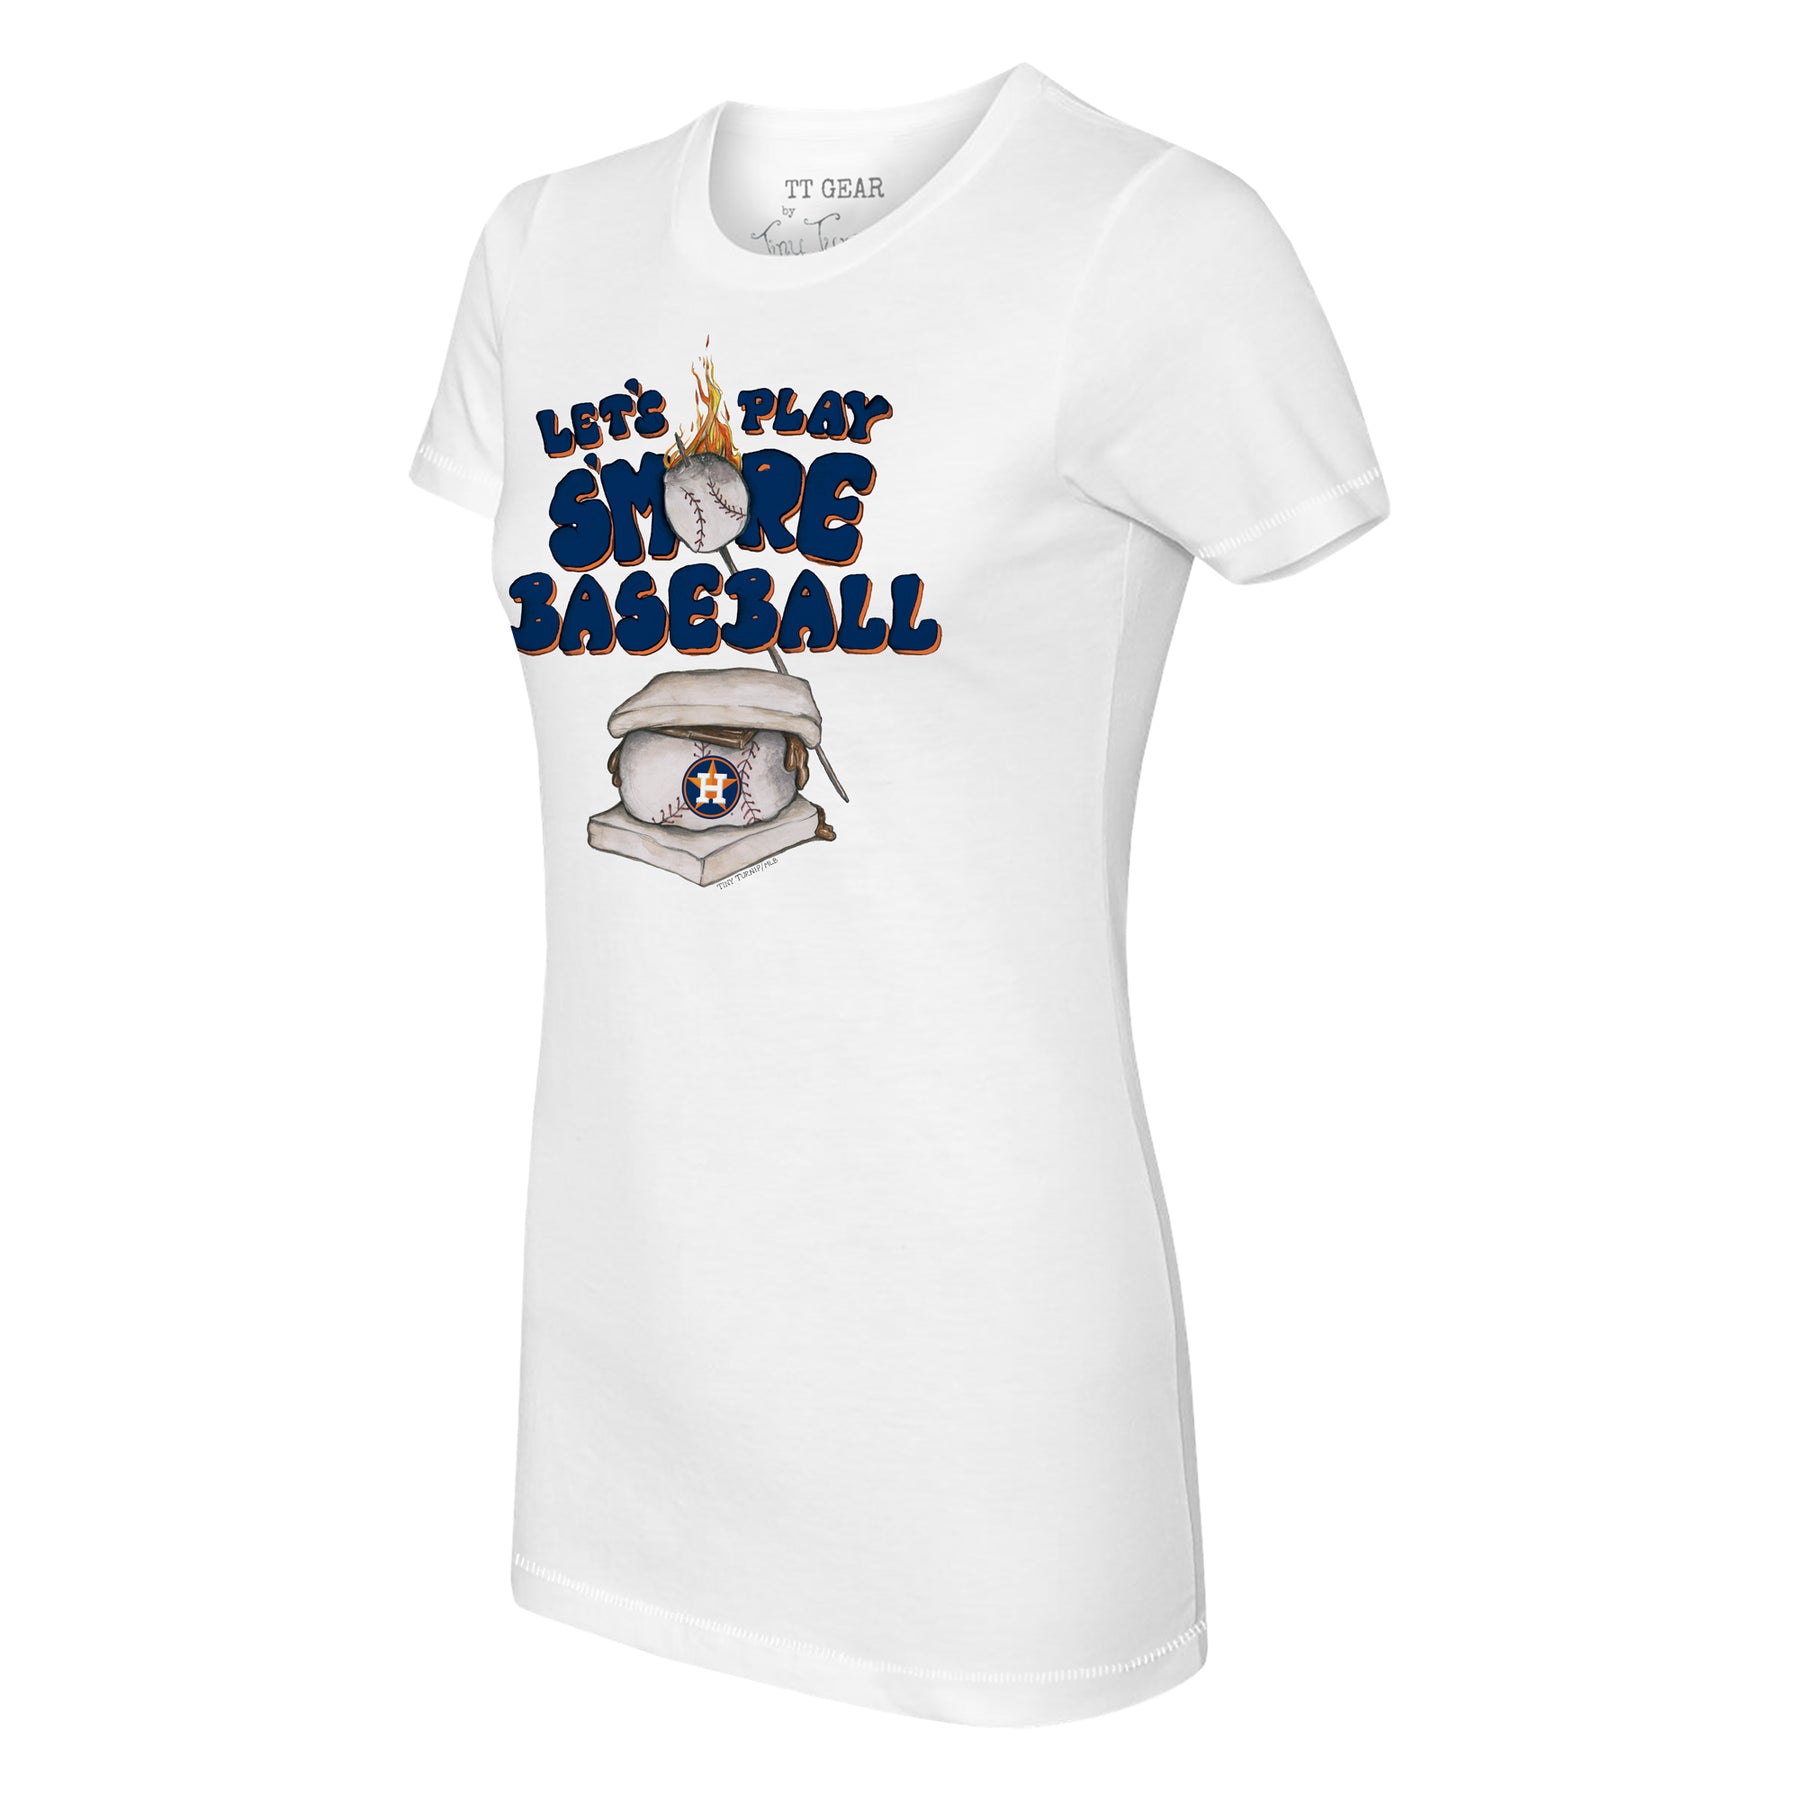 Women's Tiny Turnip White Houston Astros Unicorn T-Shirt Size: Small